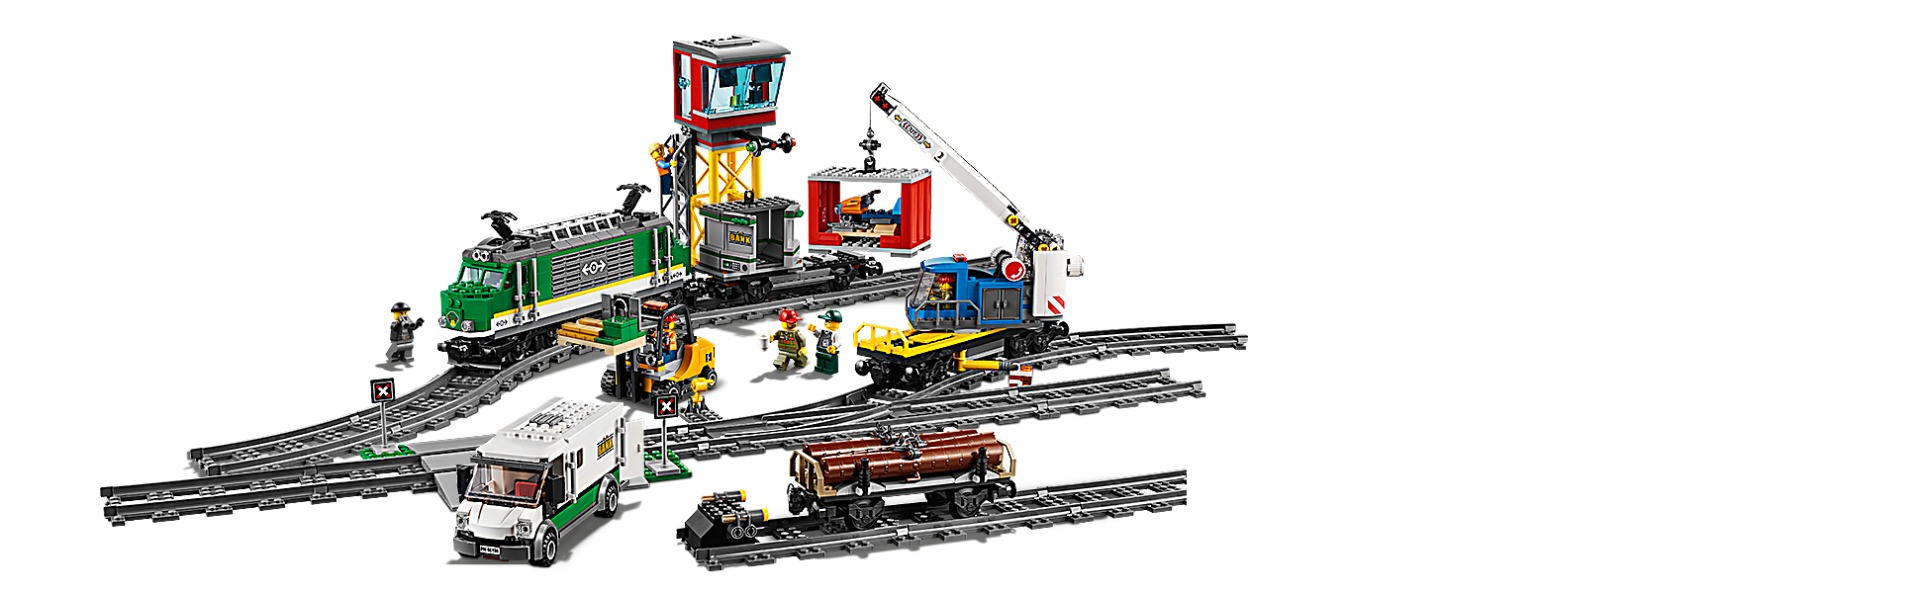 Лего поезд Ермак